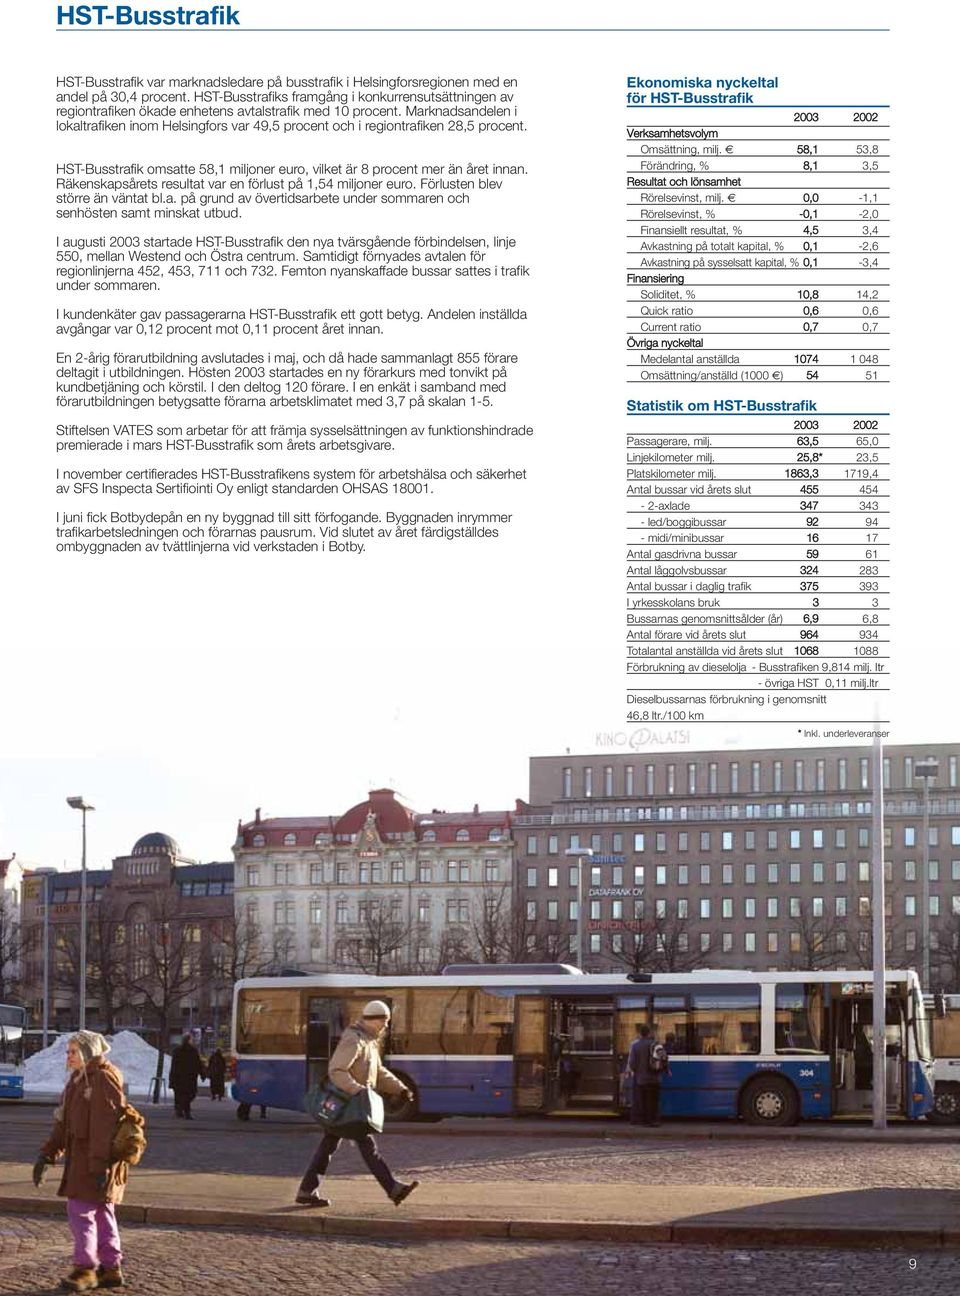 Marknadsandelen i lokaltrafiken inom Helsingfors var 49,5 procent och i regiontrafiken 28,5 procent. HST-Busstrafik omsatte 58,1 miljoner euro, vilket är 8 procent mer än året innan.